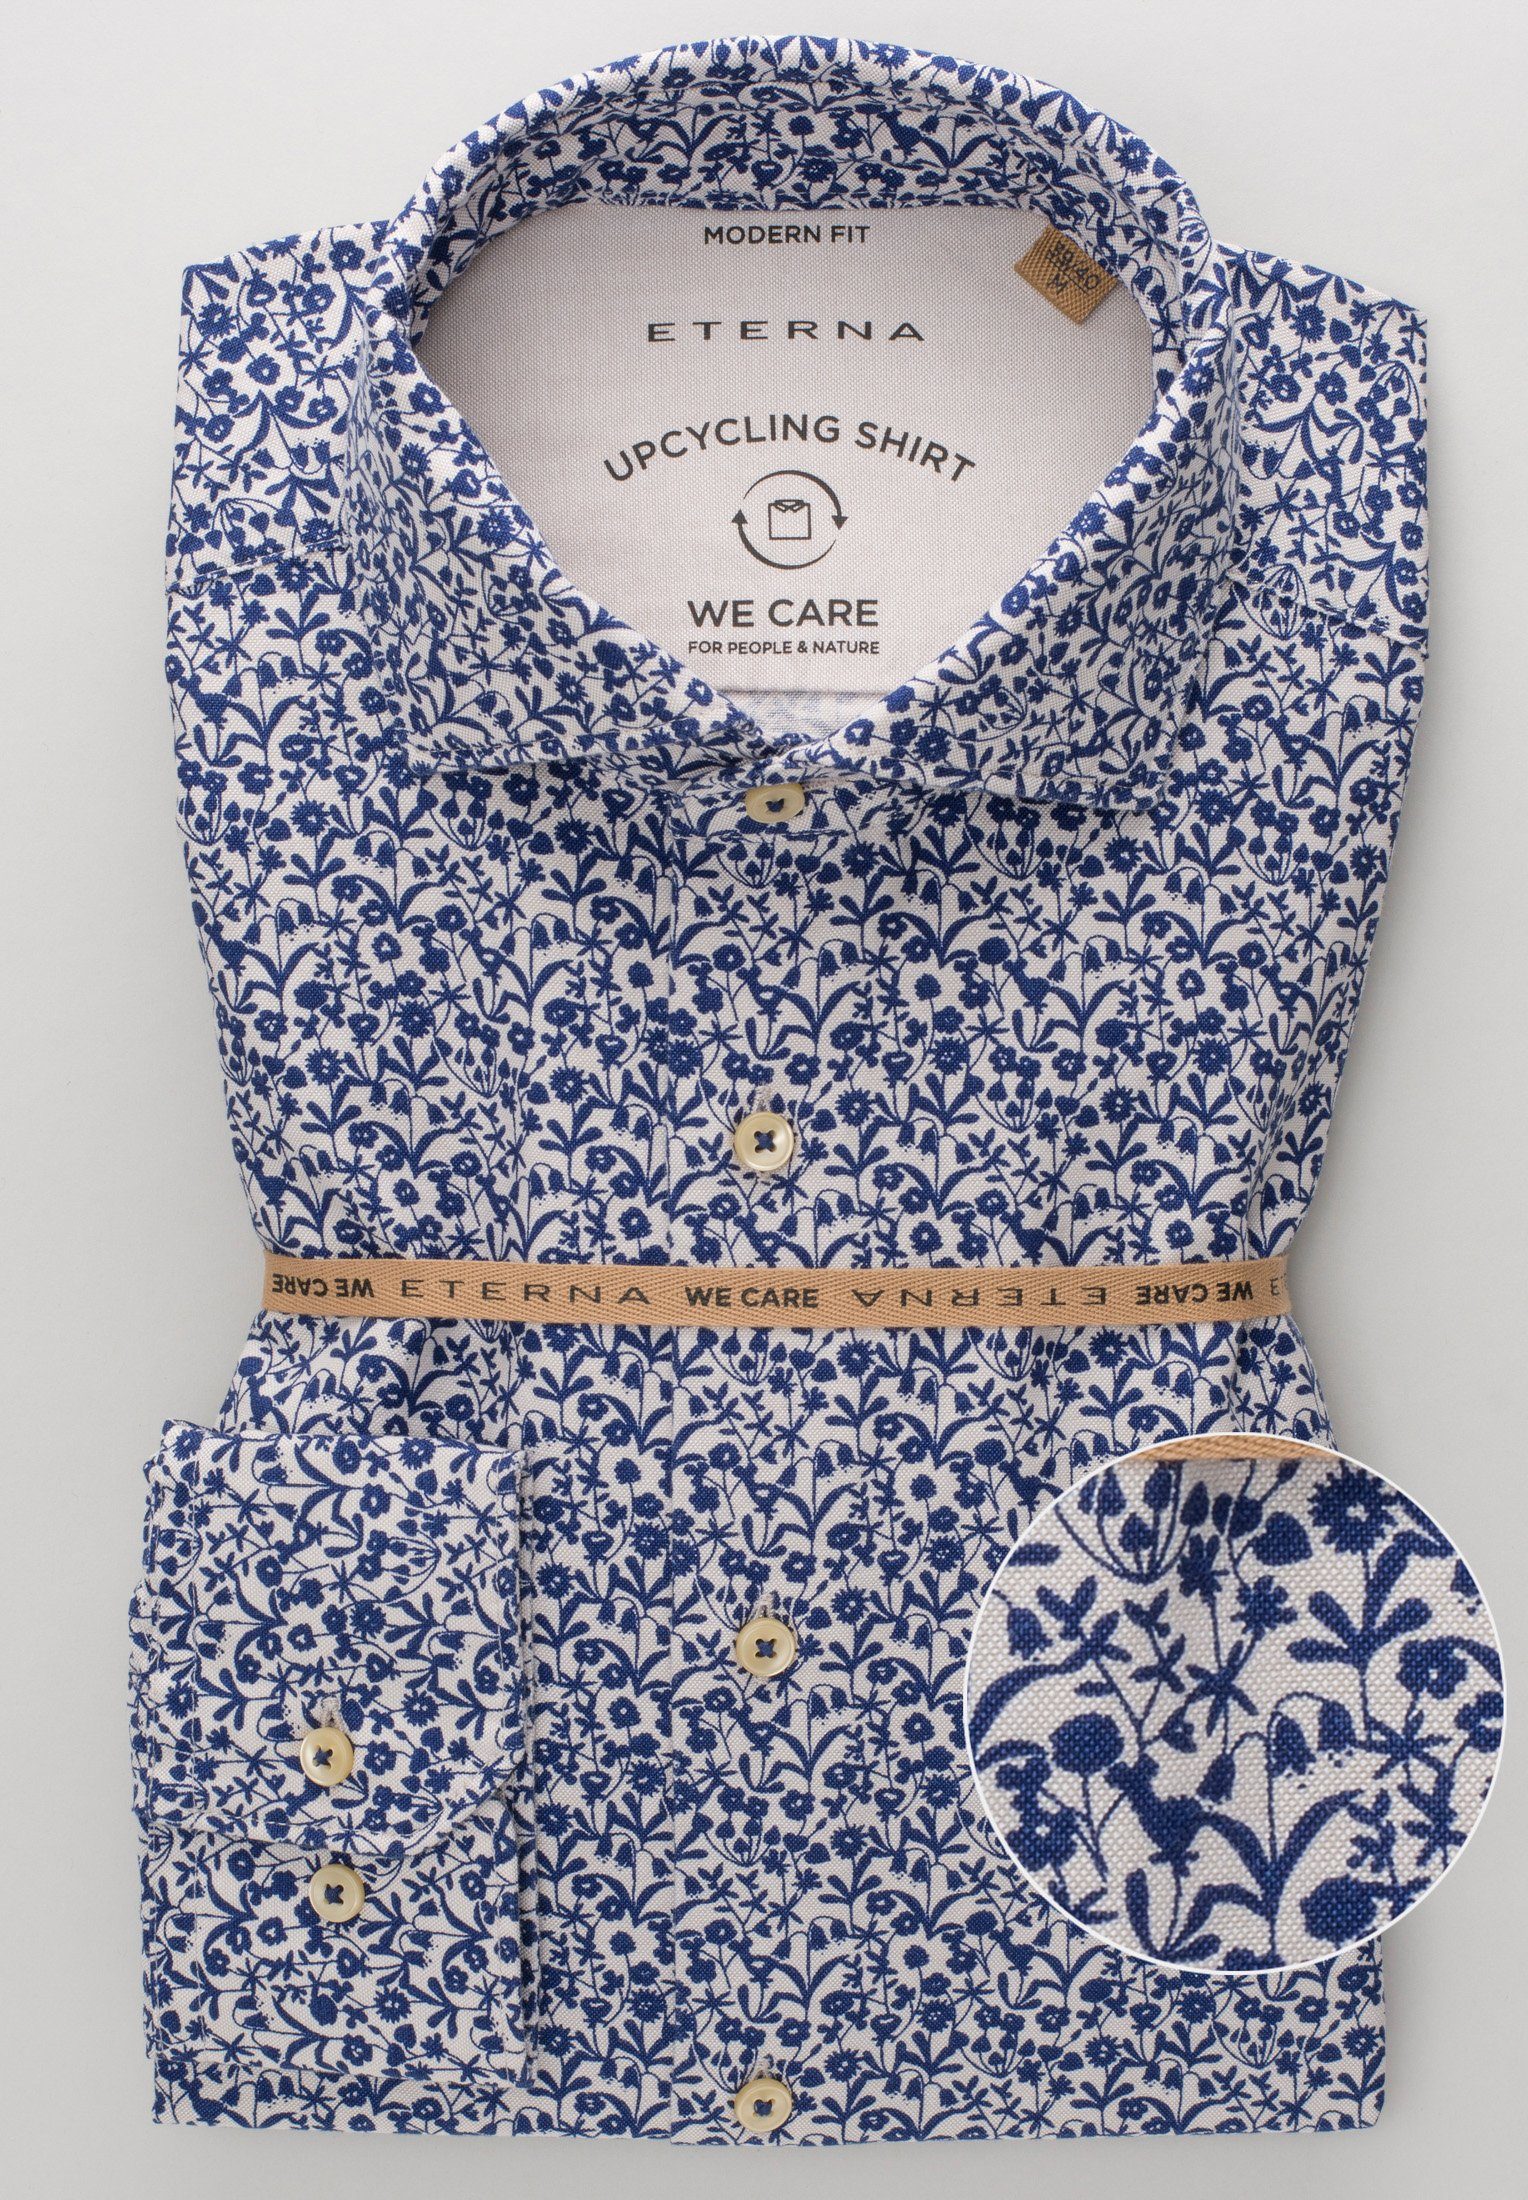 Eterna Klassische Bluse ETERNA REGULAR floral Langarm 2431-18-VS floral UPCYCLING FIT Hemd blau-weiß blau-weiss